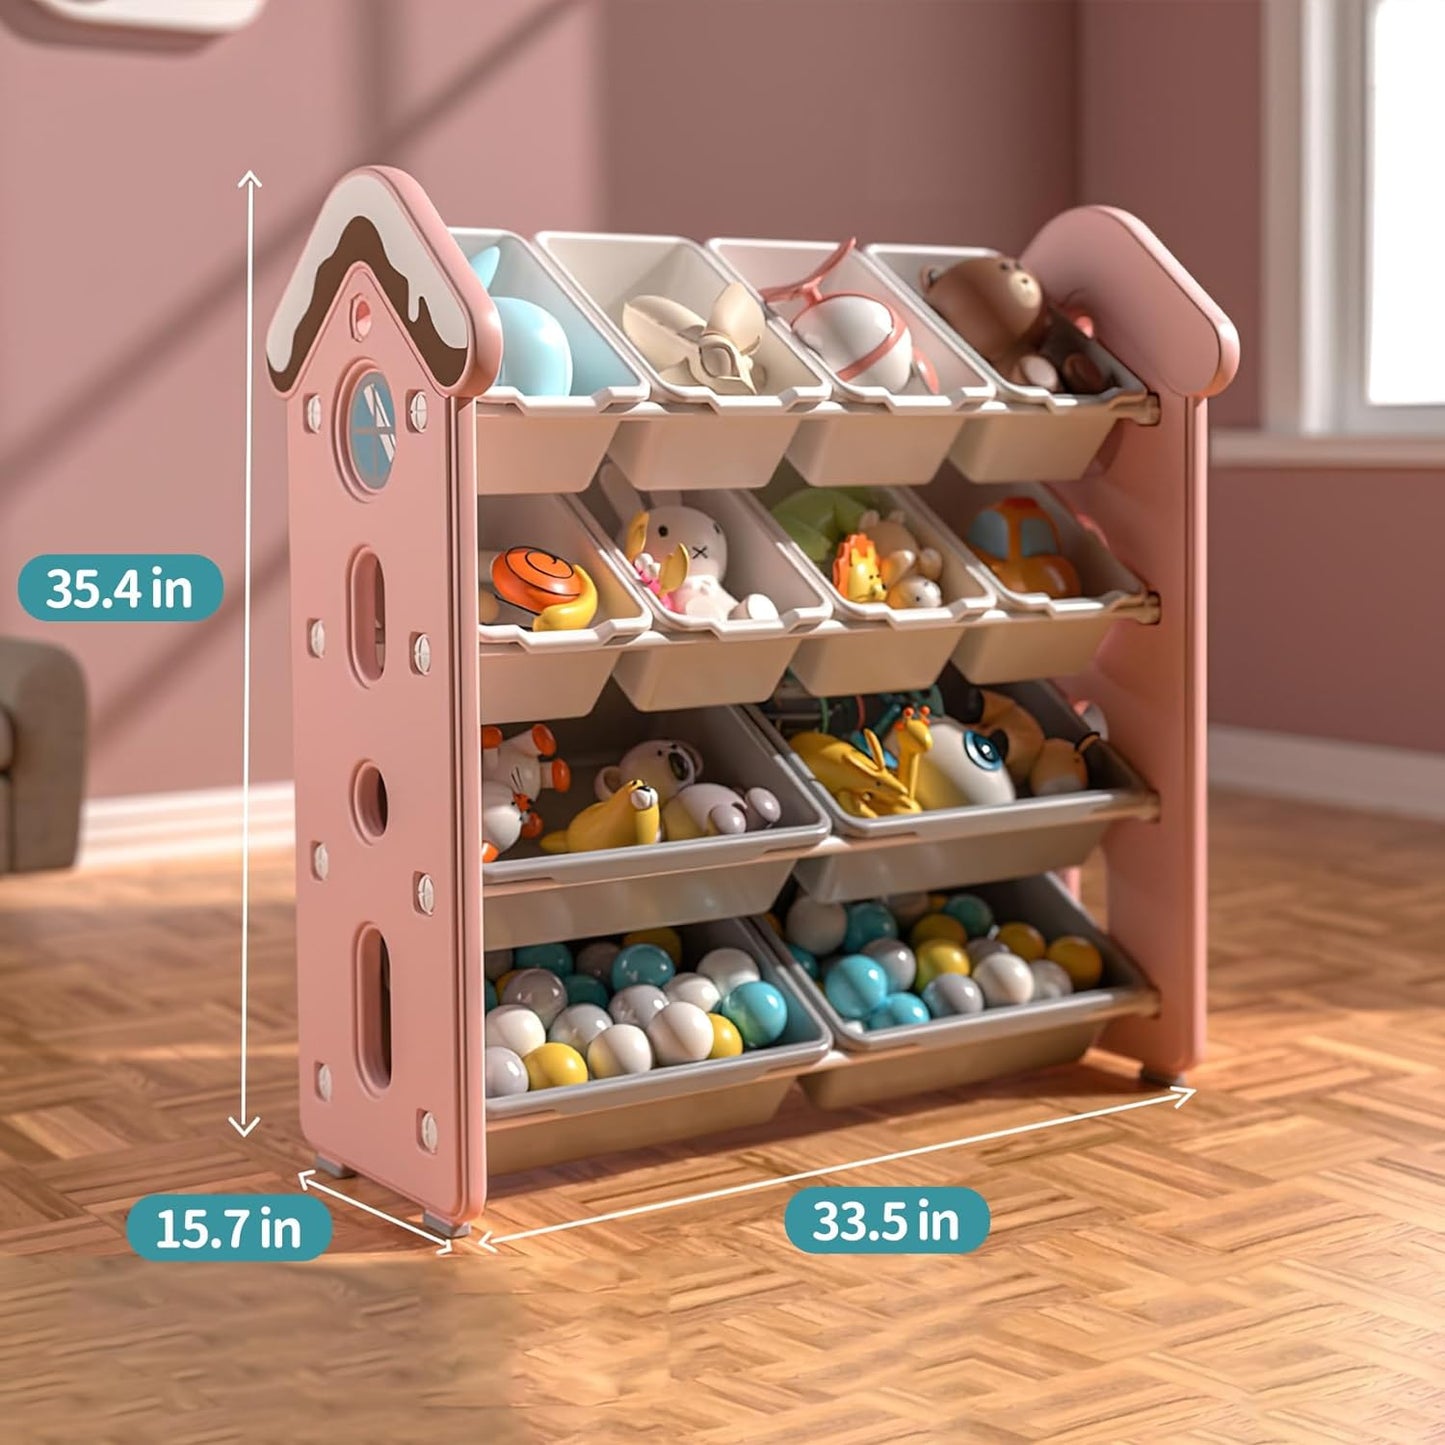 UNICOO Candy House Design Kids Toy Storage Organizer, Kids 4-Tier Toy Storage Rack with 12 Bins